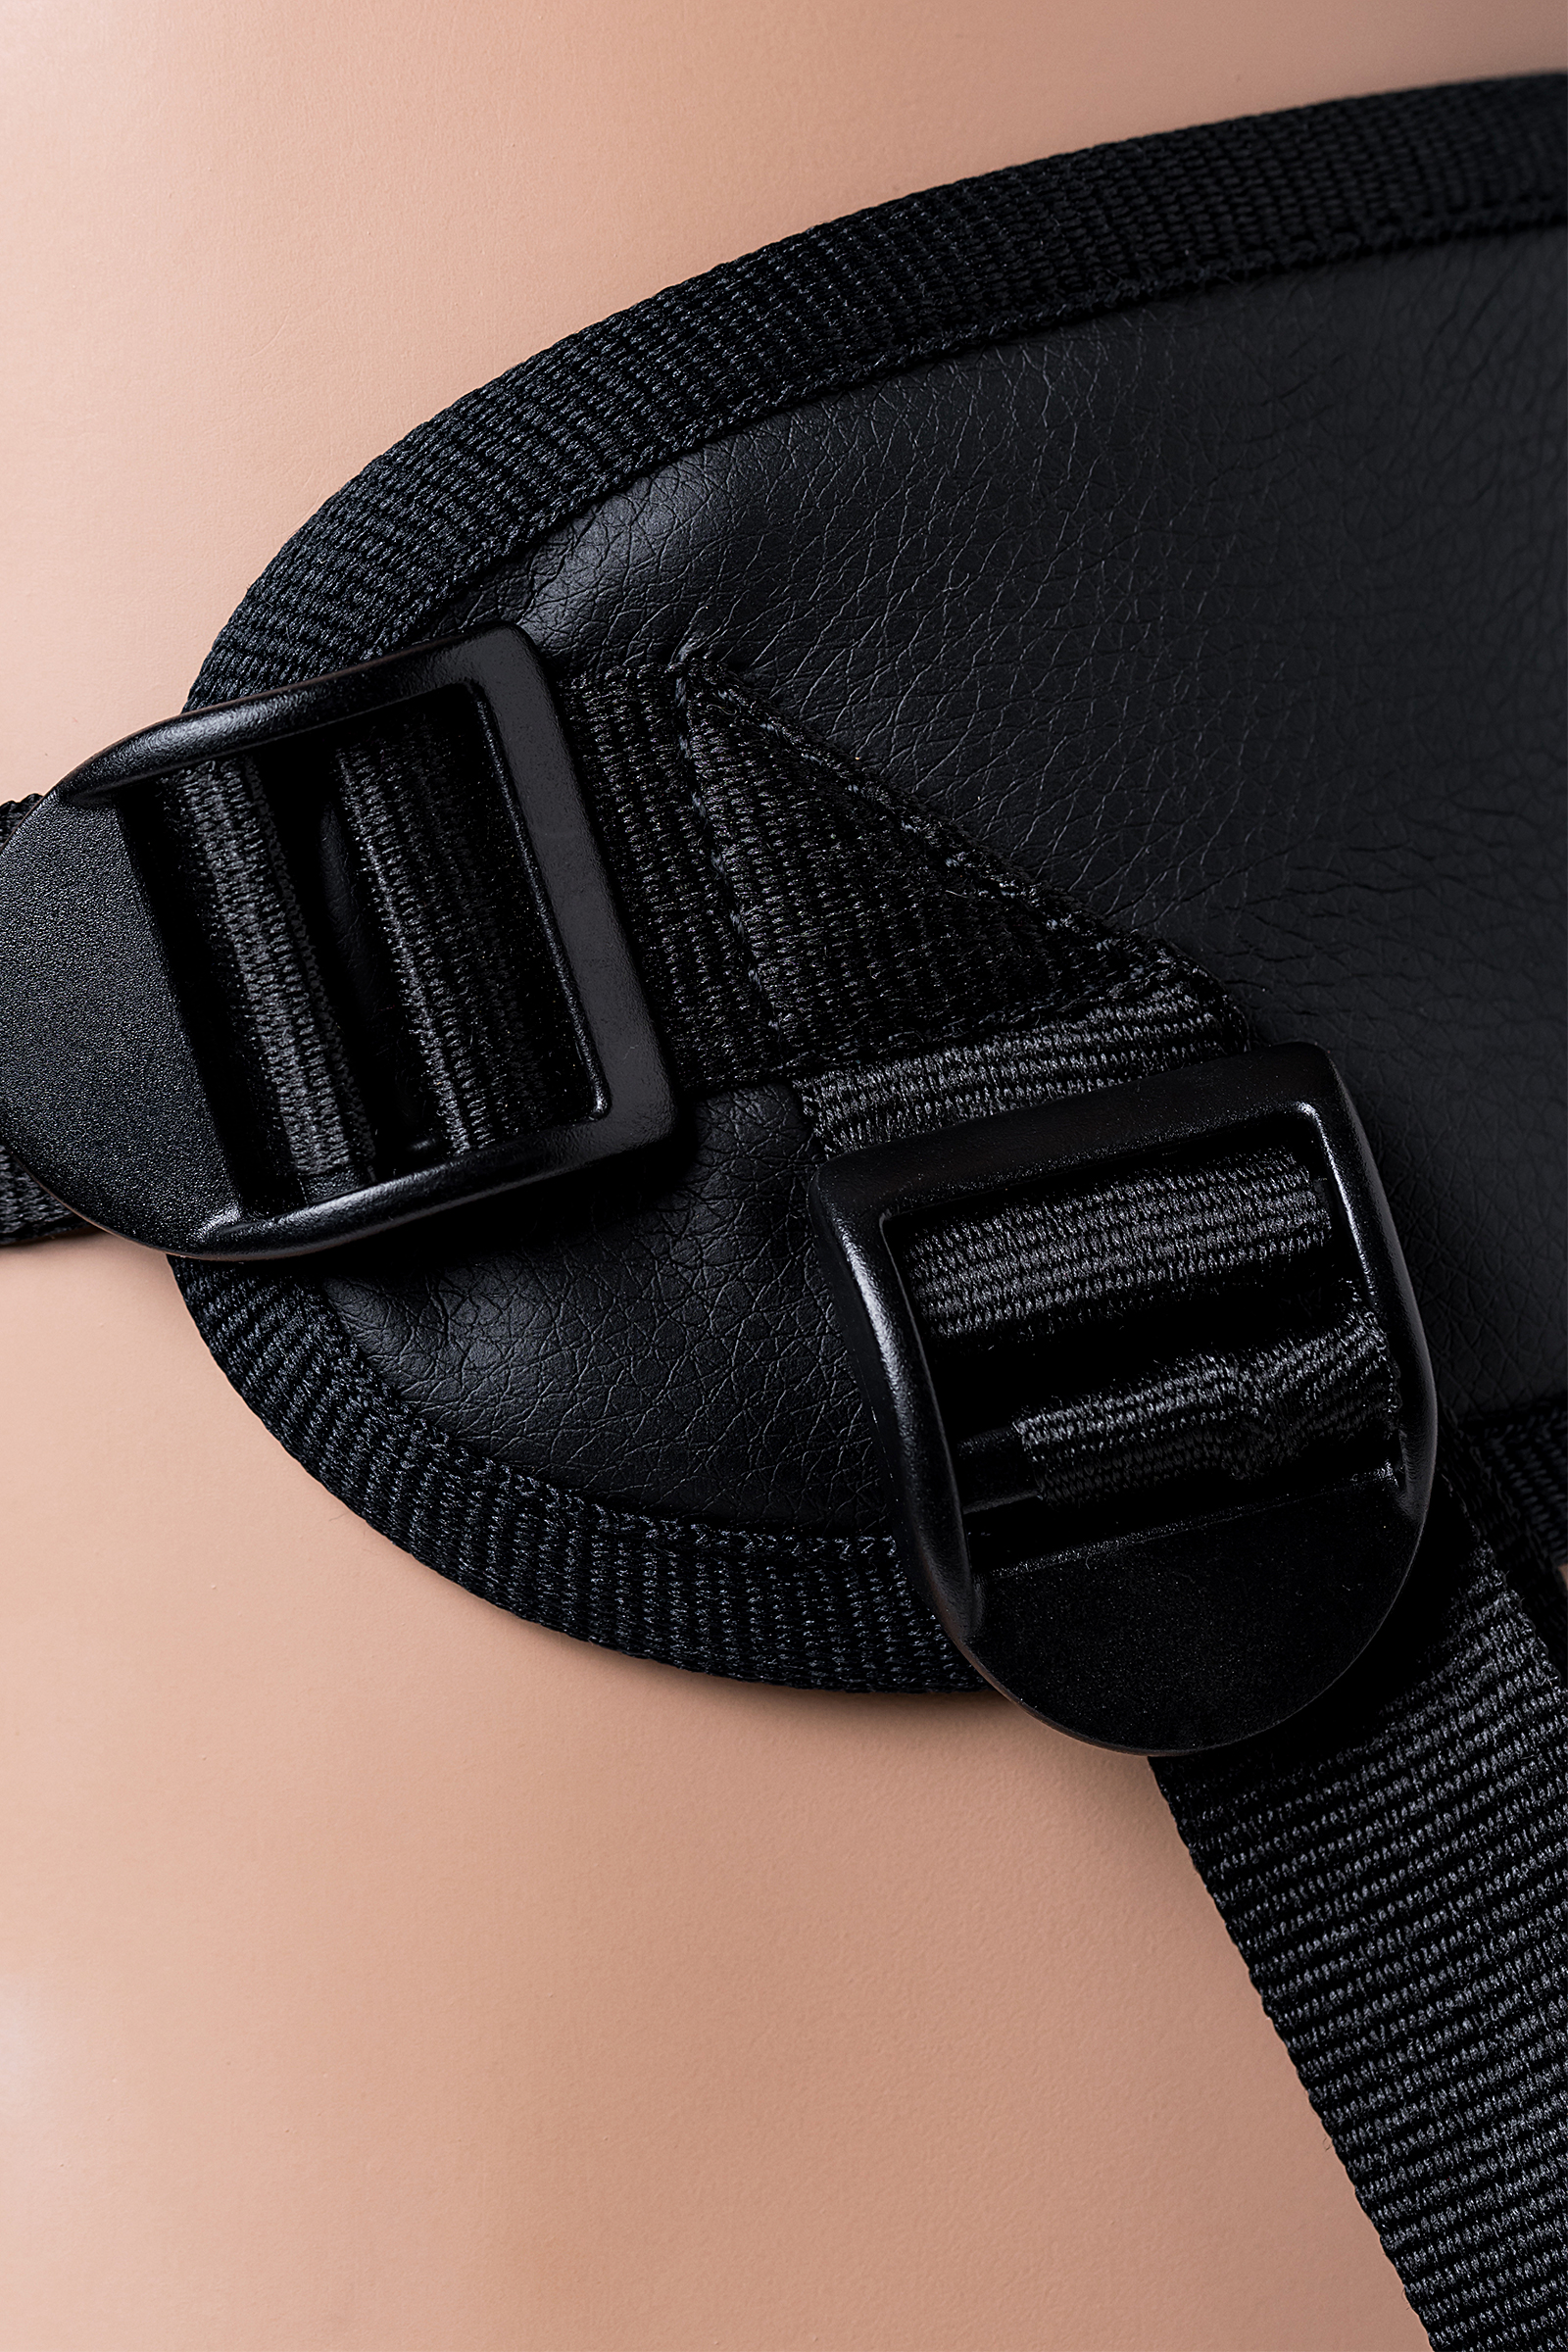 Страпон на креплении LoveToy с поясом Harness, реалистичный, neoskin, телесный, 20 см. Фото N5